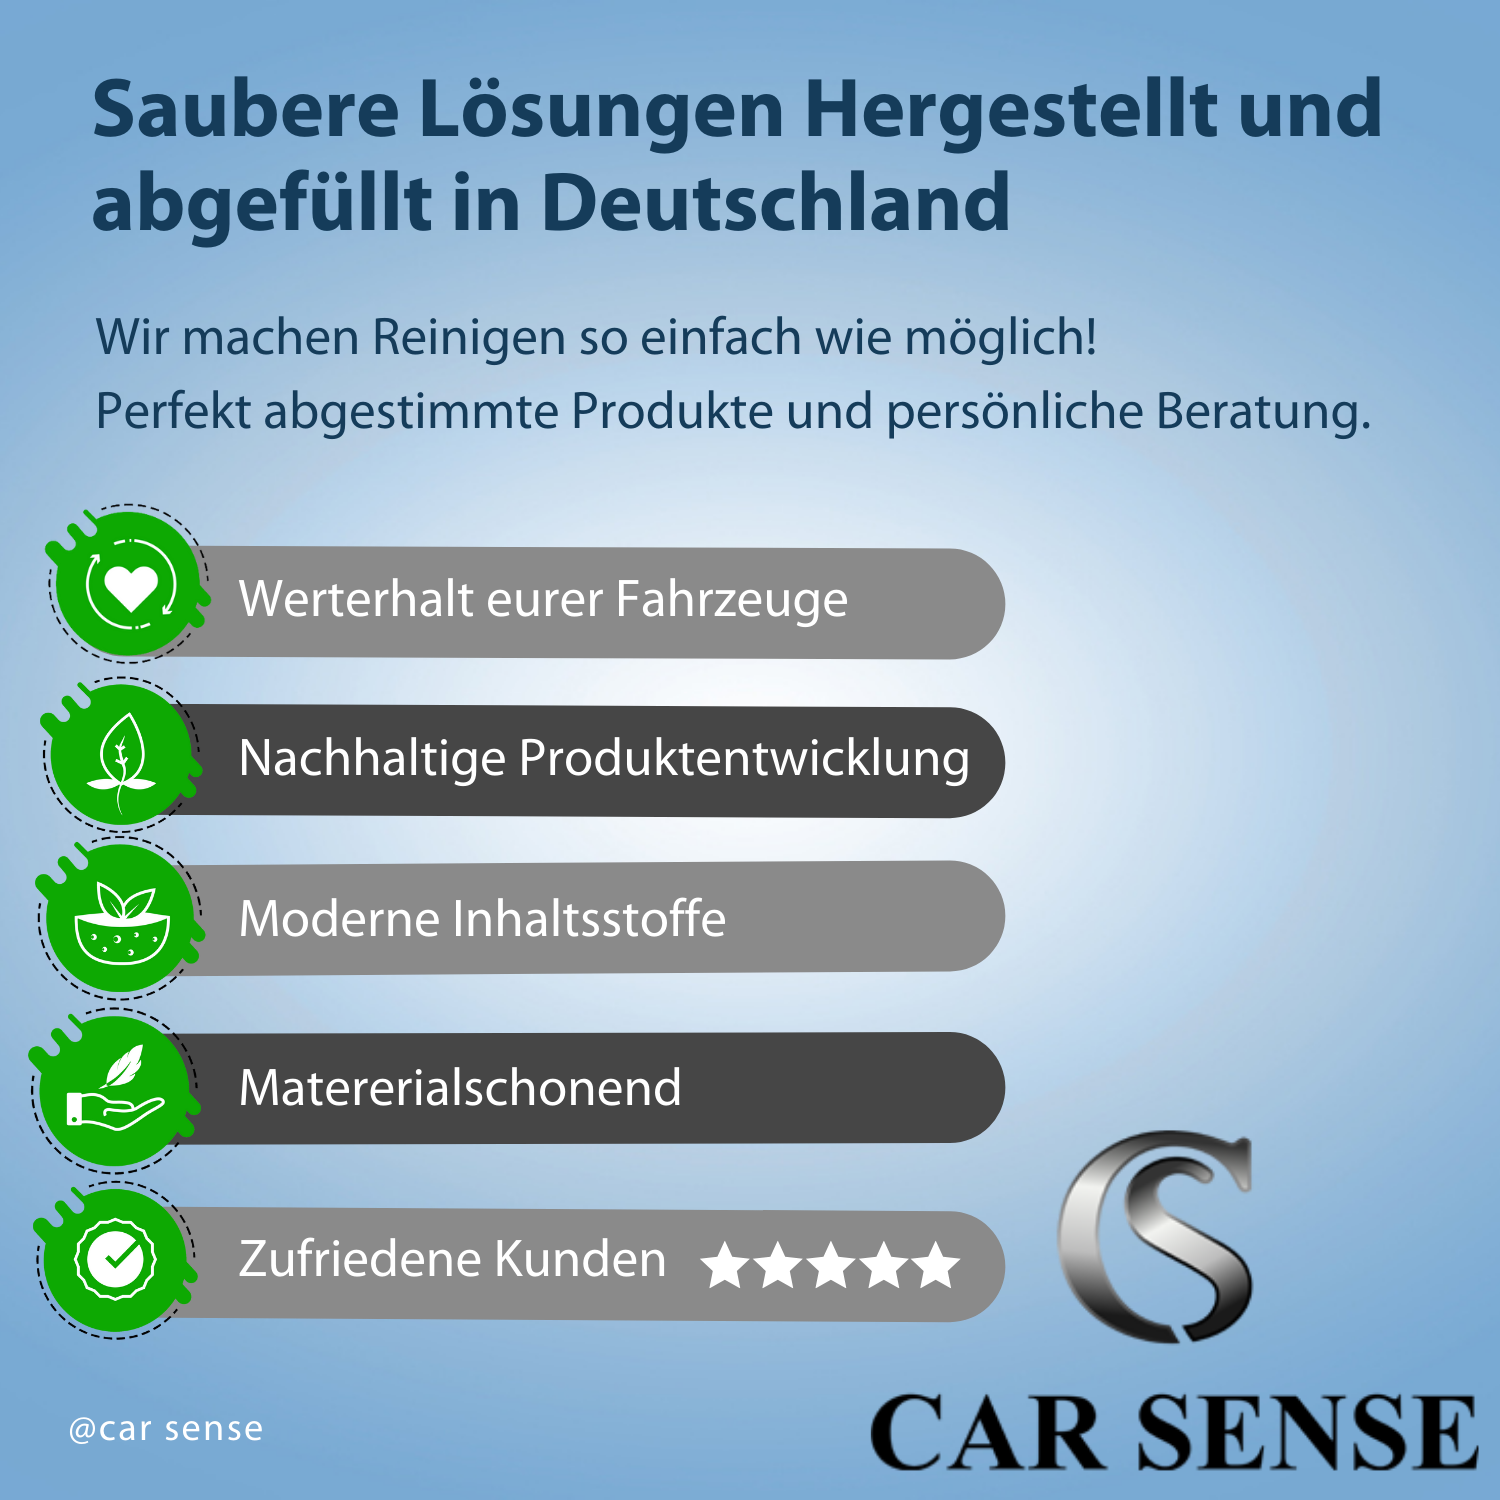 Car Sense Car Carpet Refresher - Polsterreinigung für Autoinnenraum  - Teppichreiniger Auto, Fleckenentferner für Teppich, Hochwirksam & materialschonend